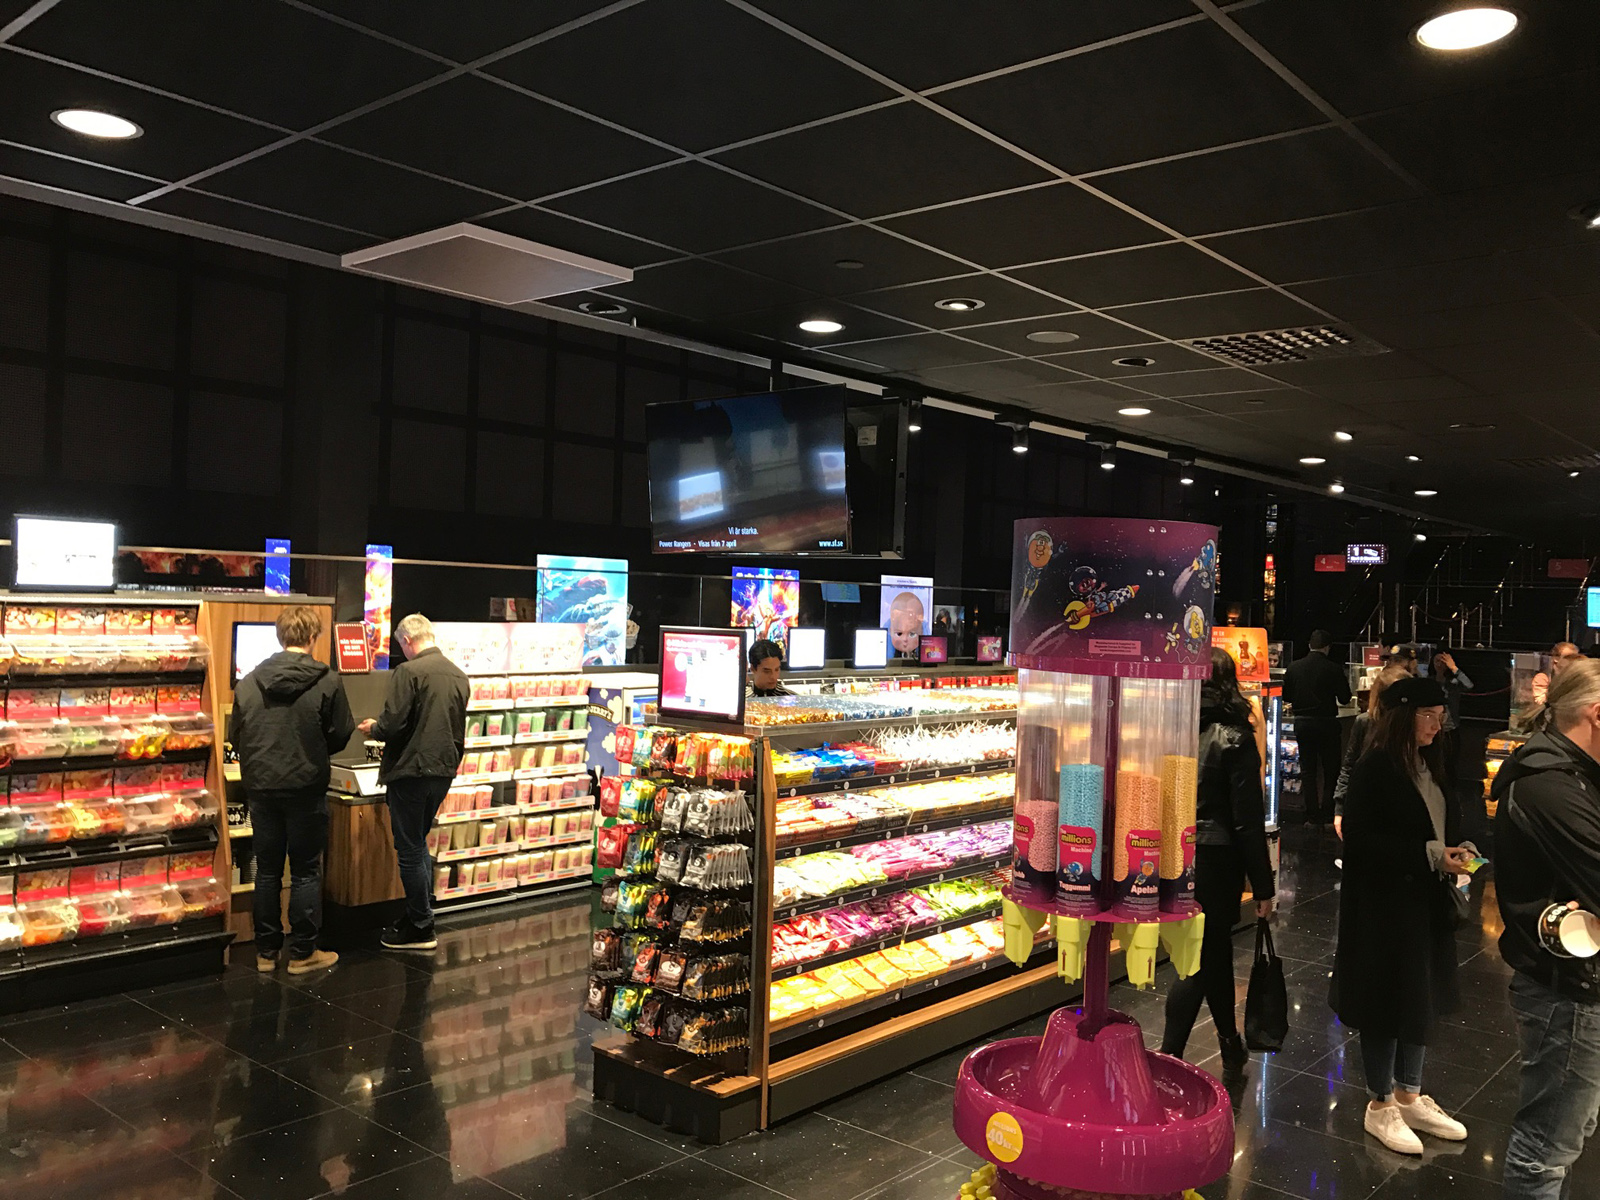 Imax Pa Filmstaden Mall Of Scandinavia 3d Upplevelse I Varldsklass